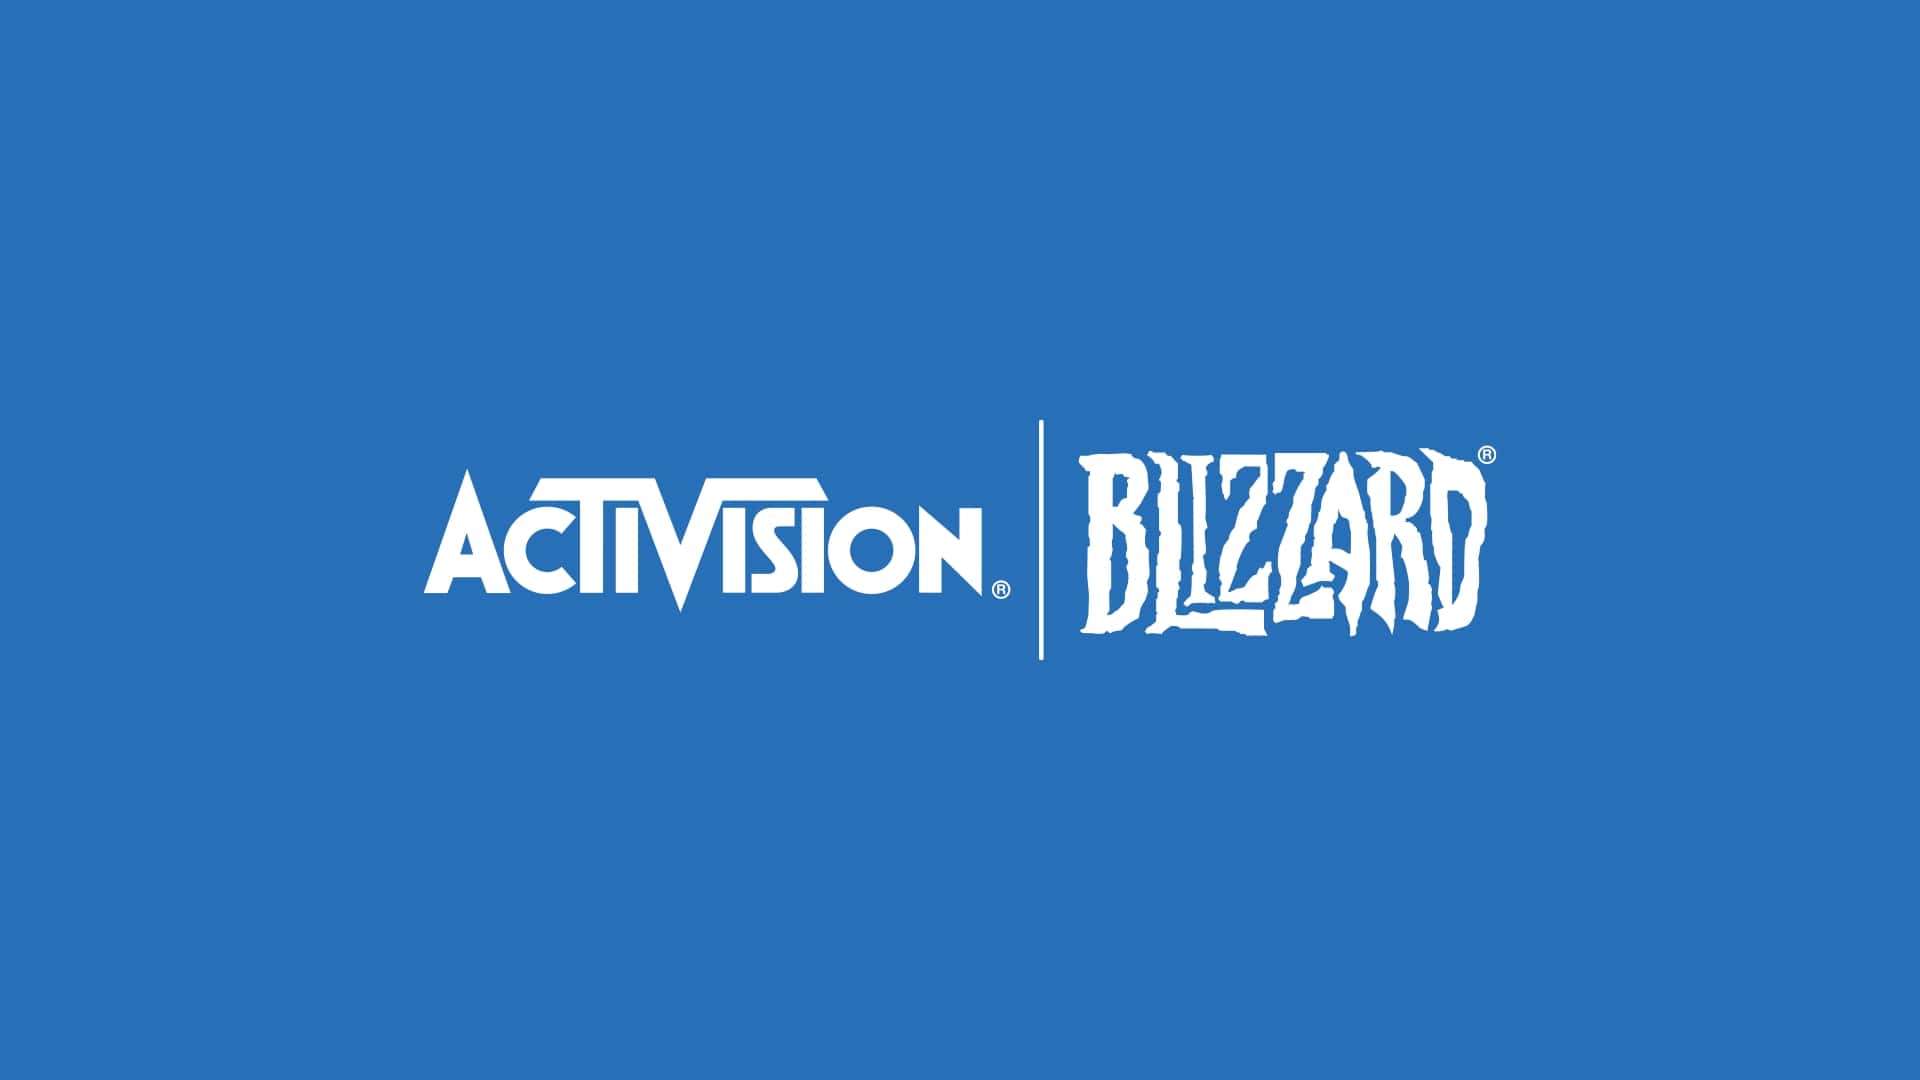 Activision Blizzard logos